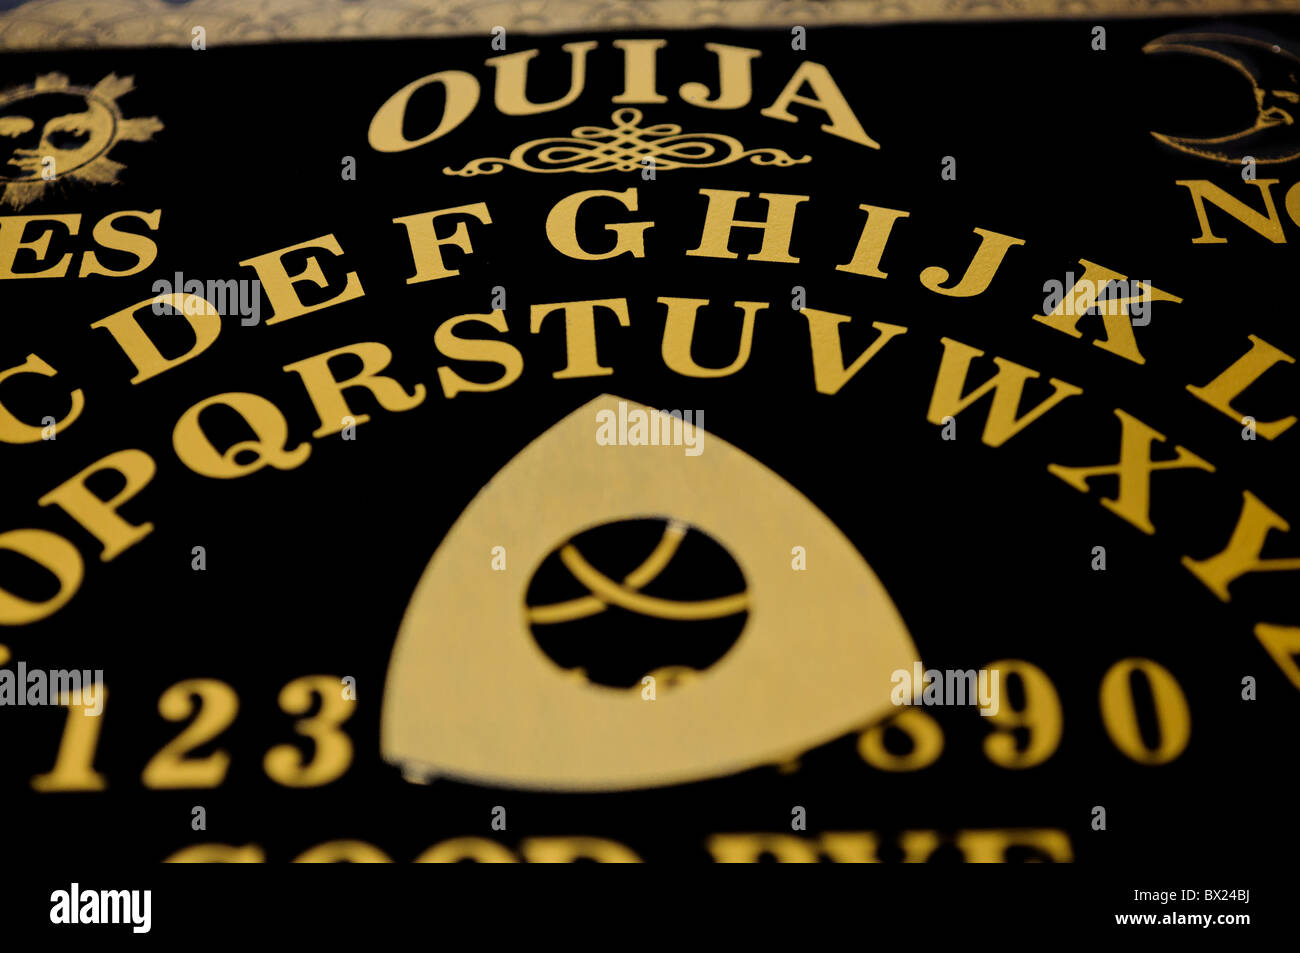 Ouija board Stock Photo